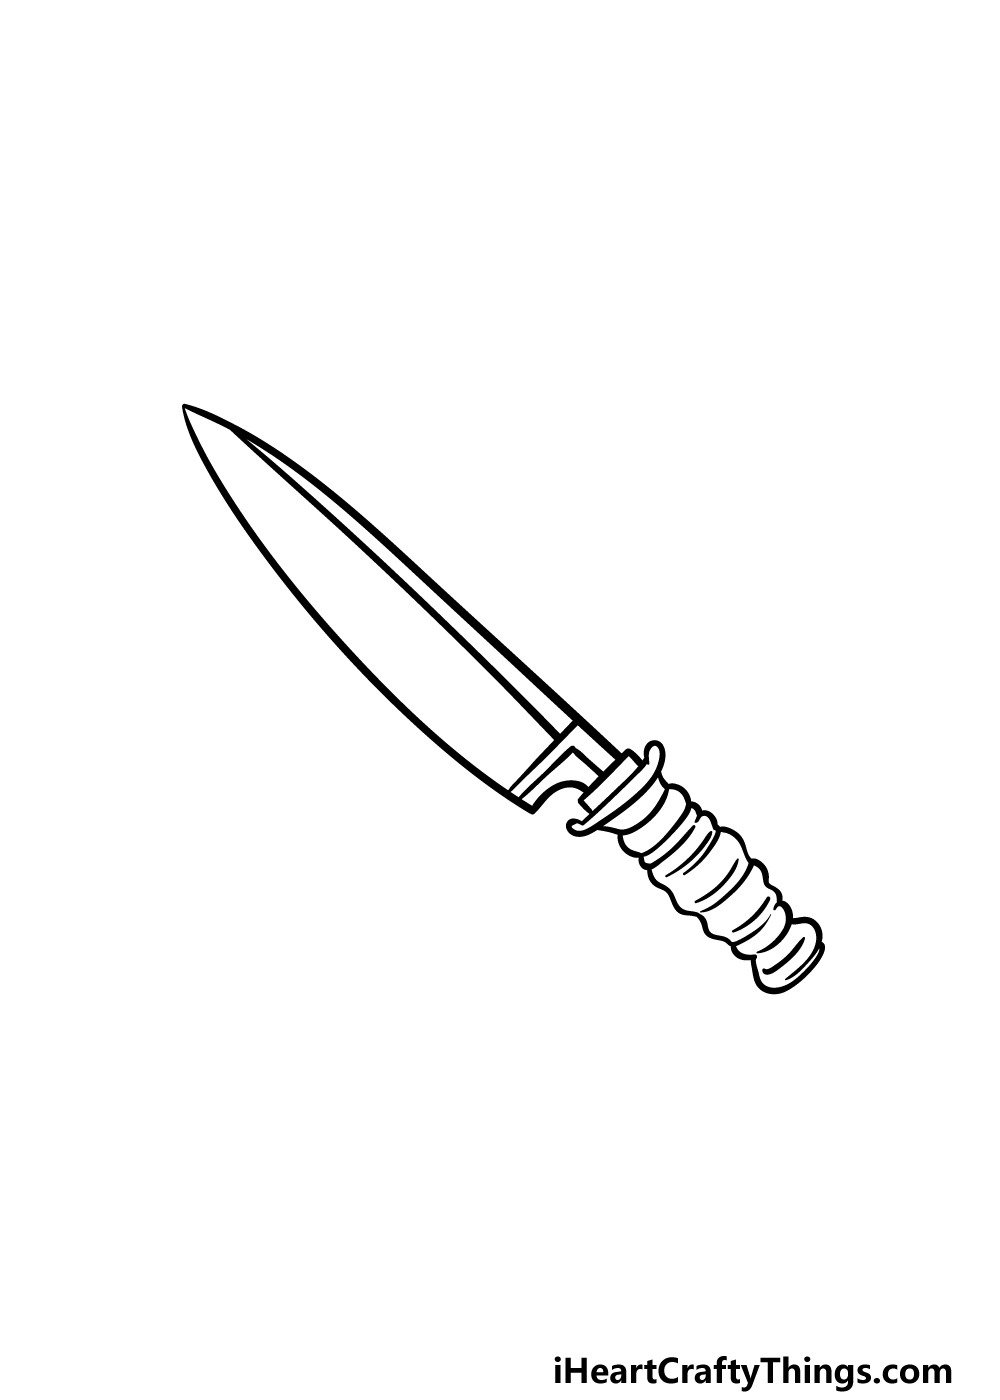 Hướng dẫn cách vẽ con dao đơn giản với 6 bước cơ bản